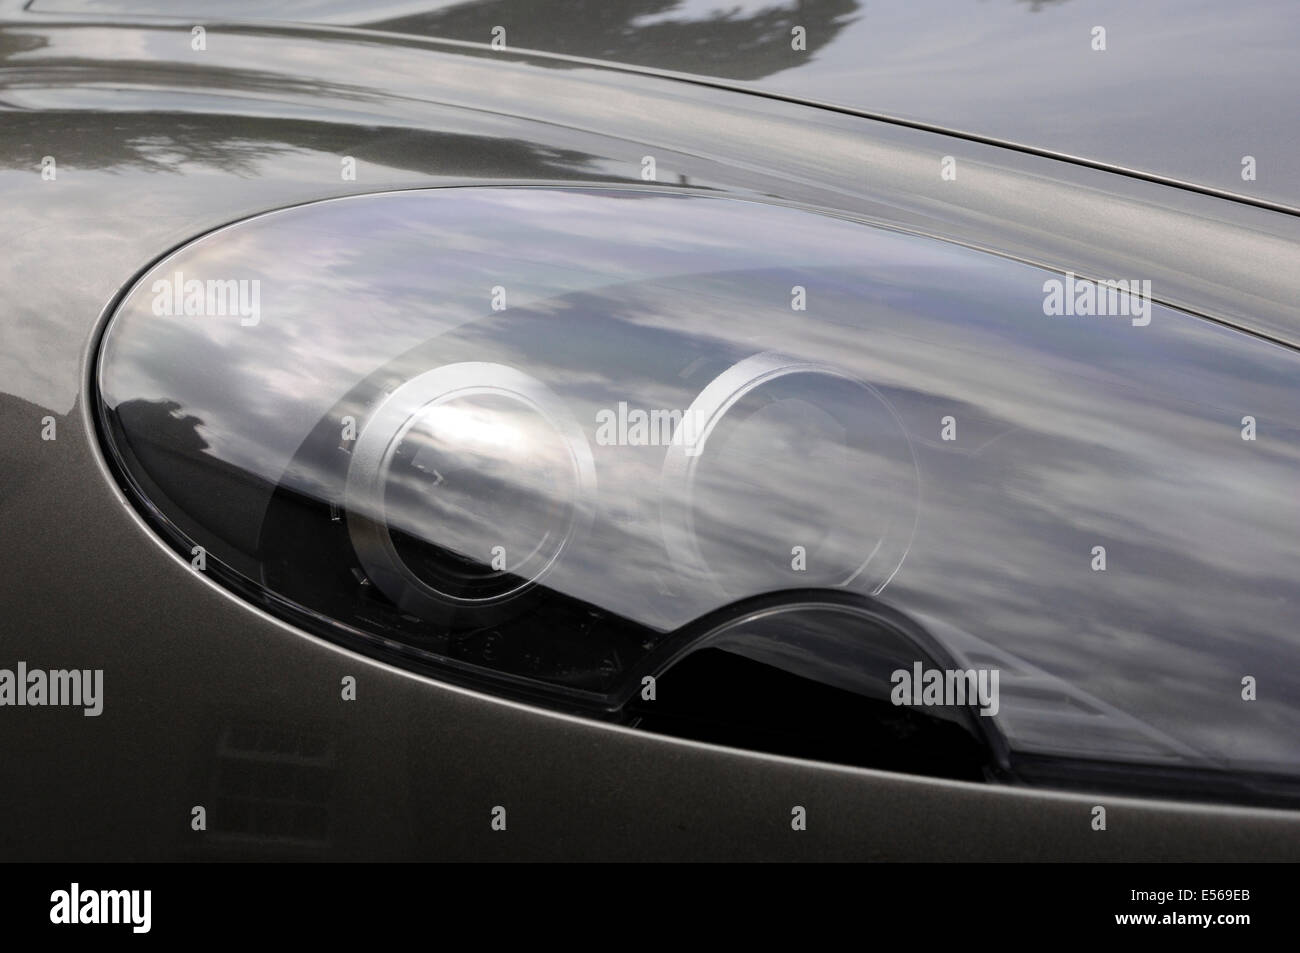 Il faro della Aston Martin DB9 Volante Foto Stock